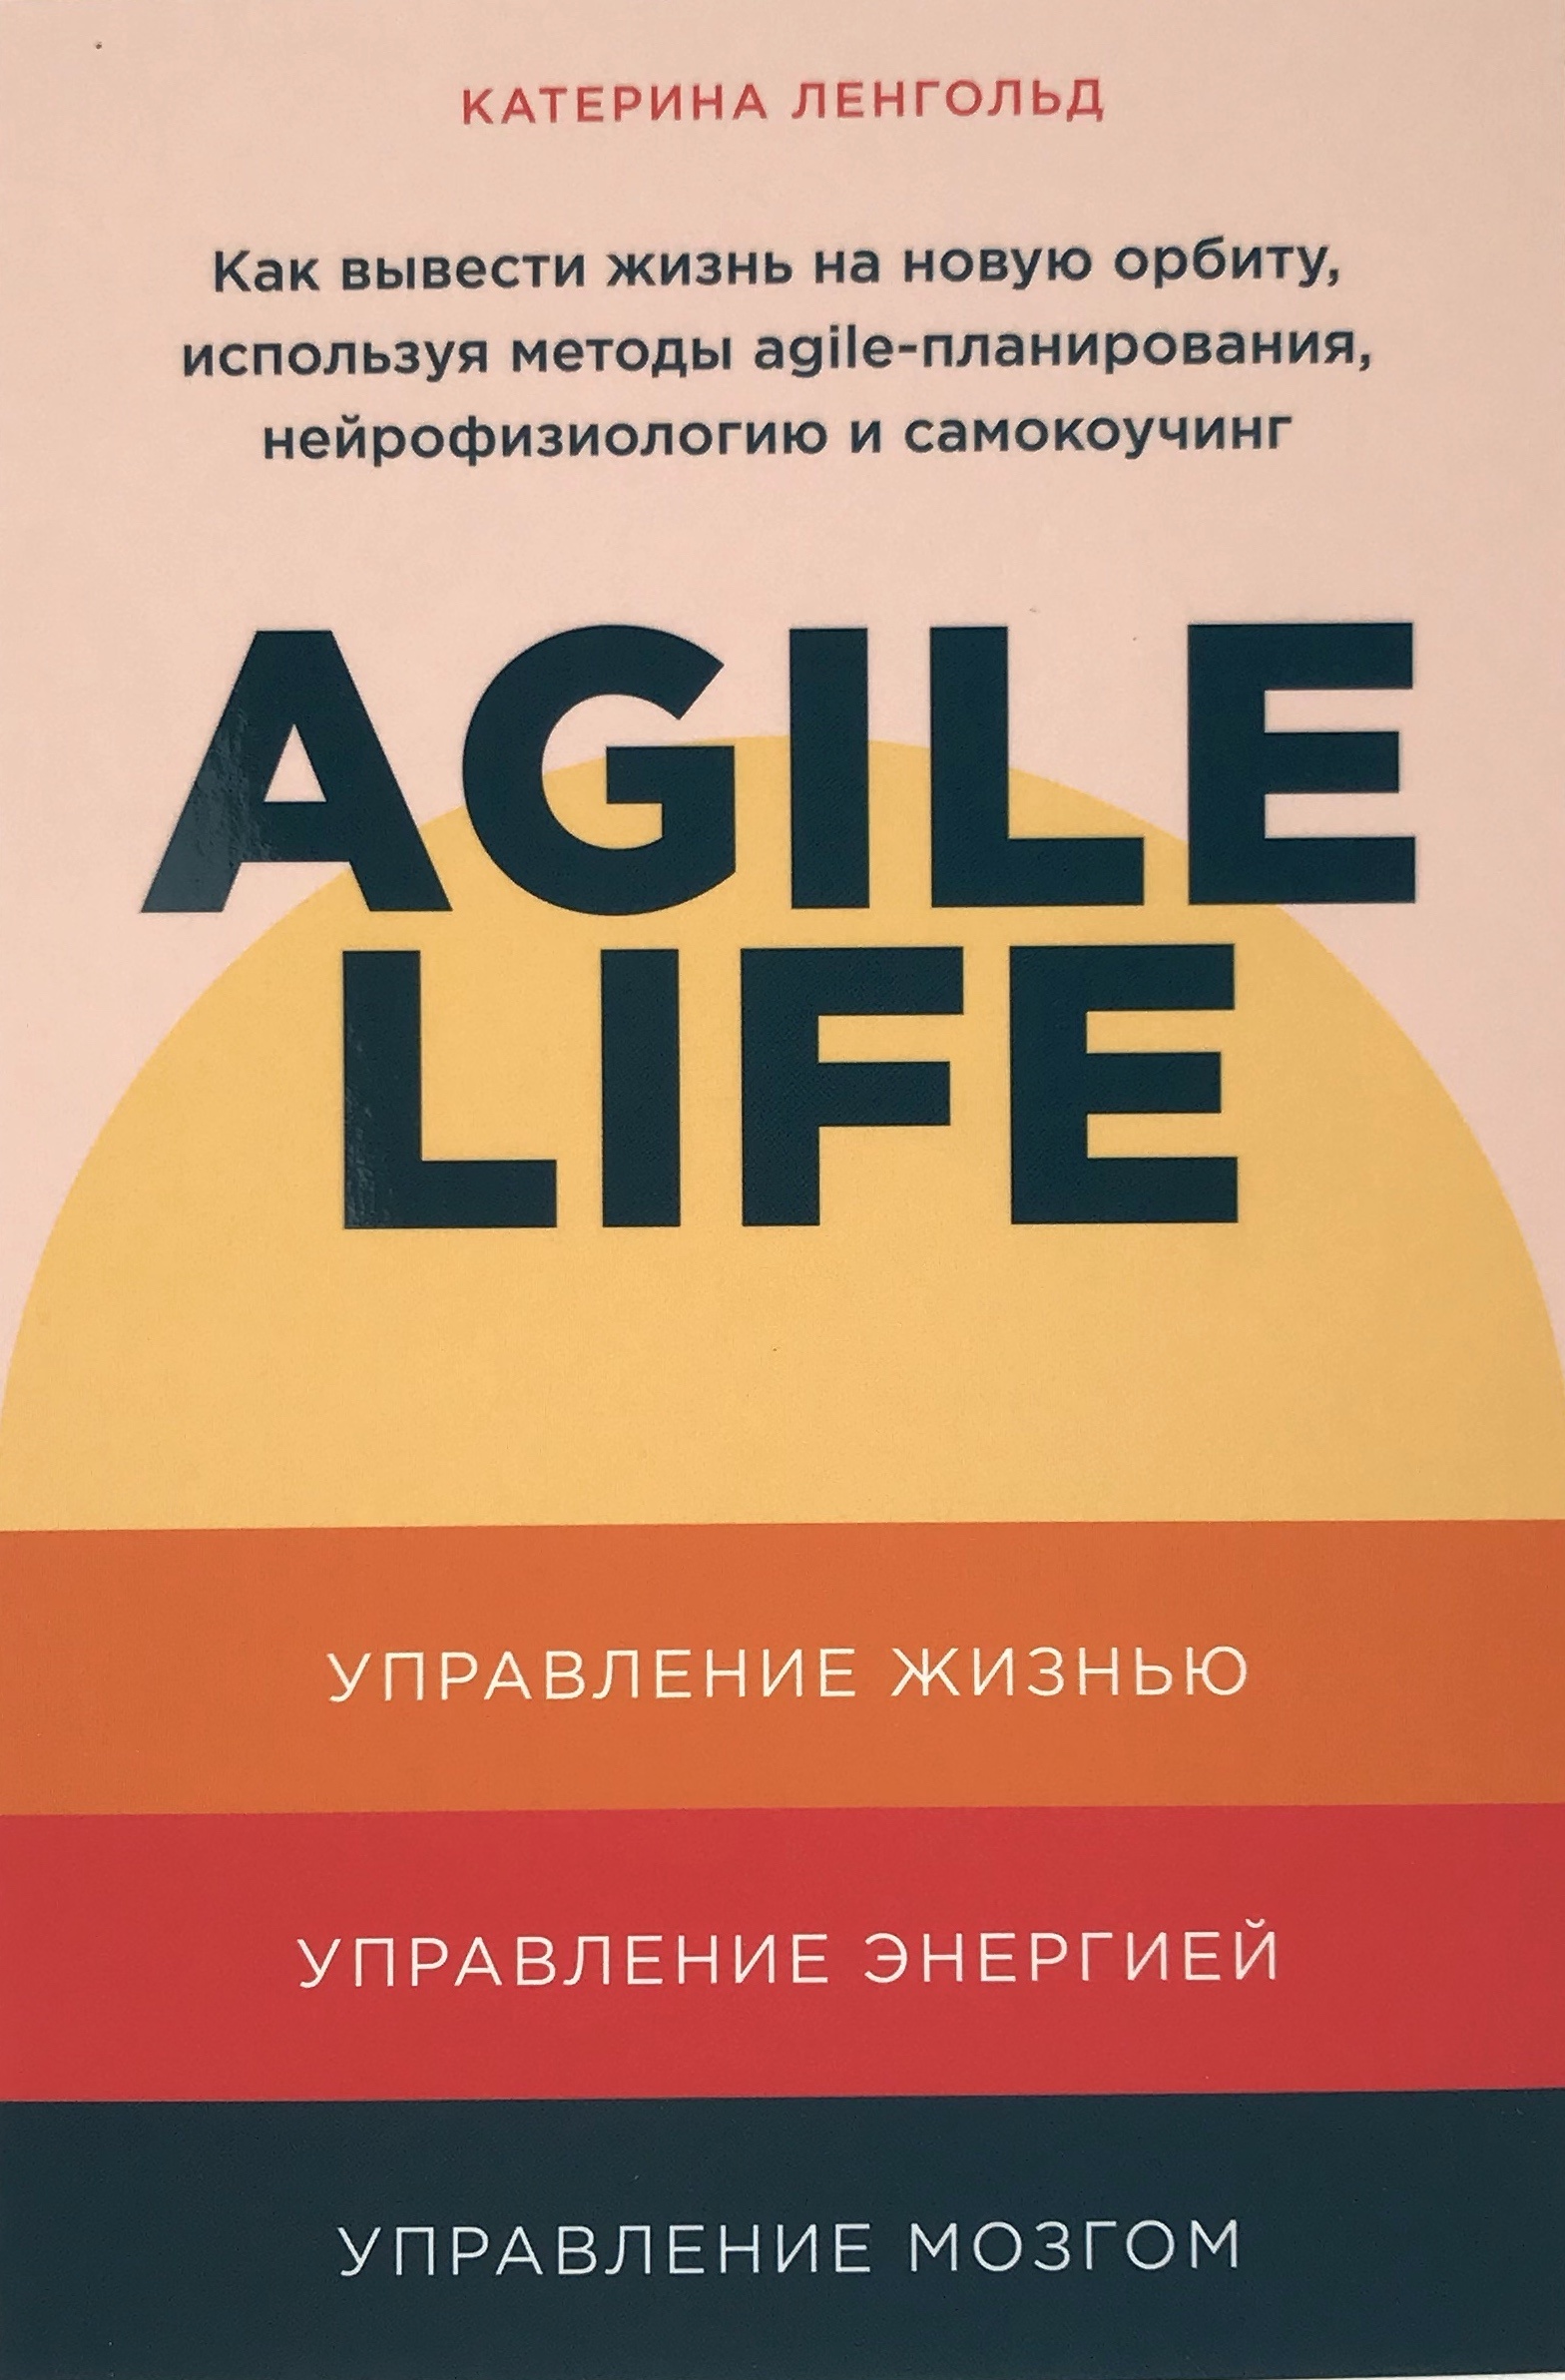 Agile Life. Как вывести жизнь на новую орбиту, используя методы agile-планирования, нейрофизиологию и самокоучинг